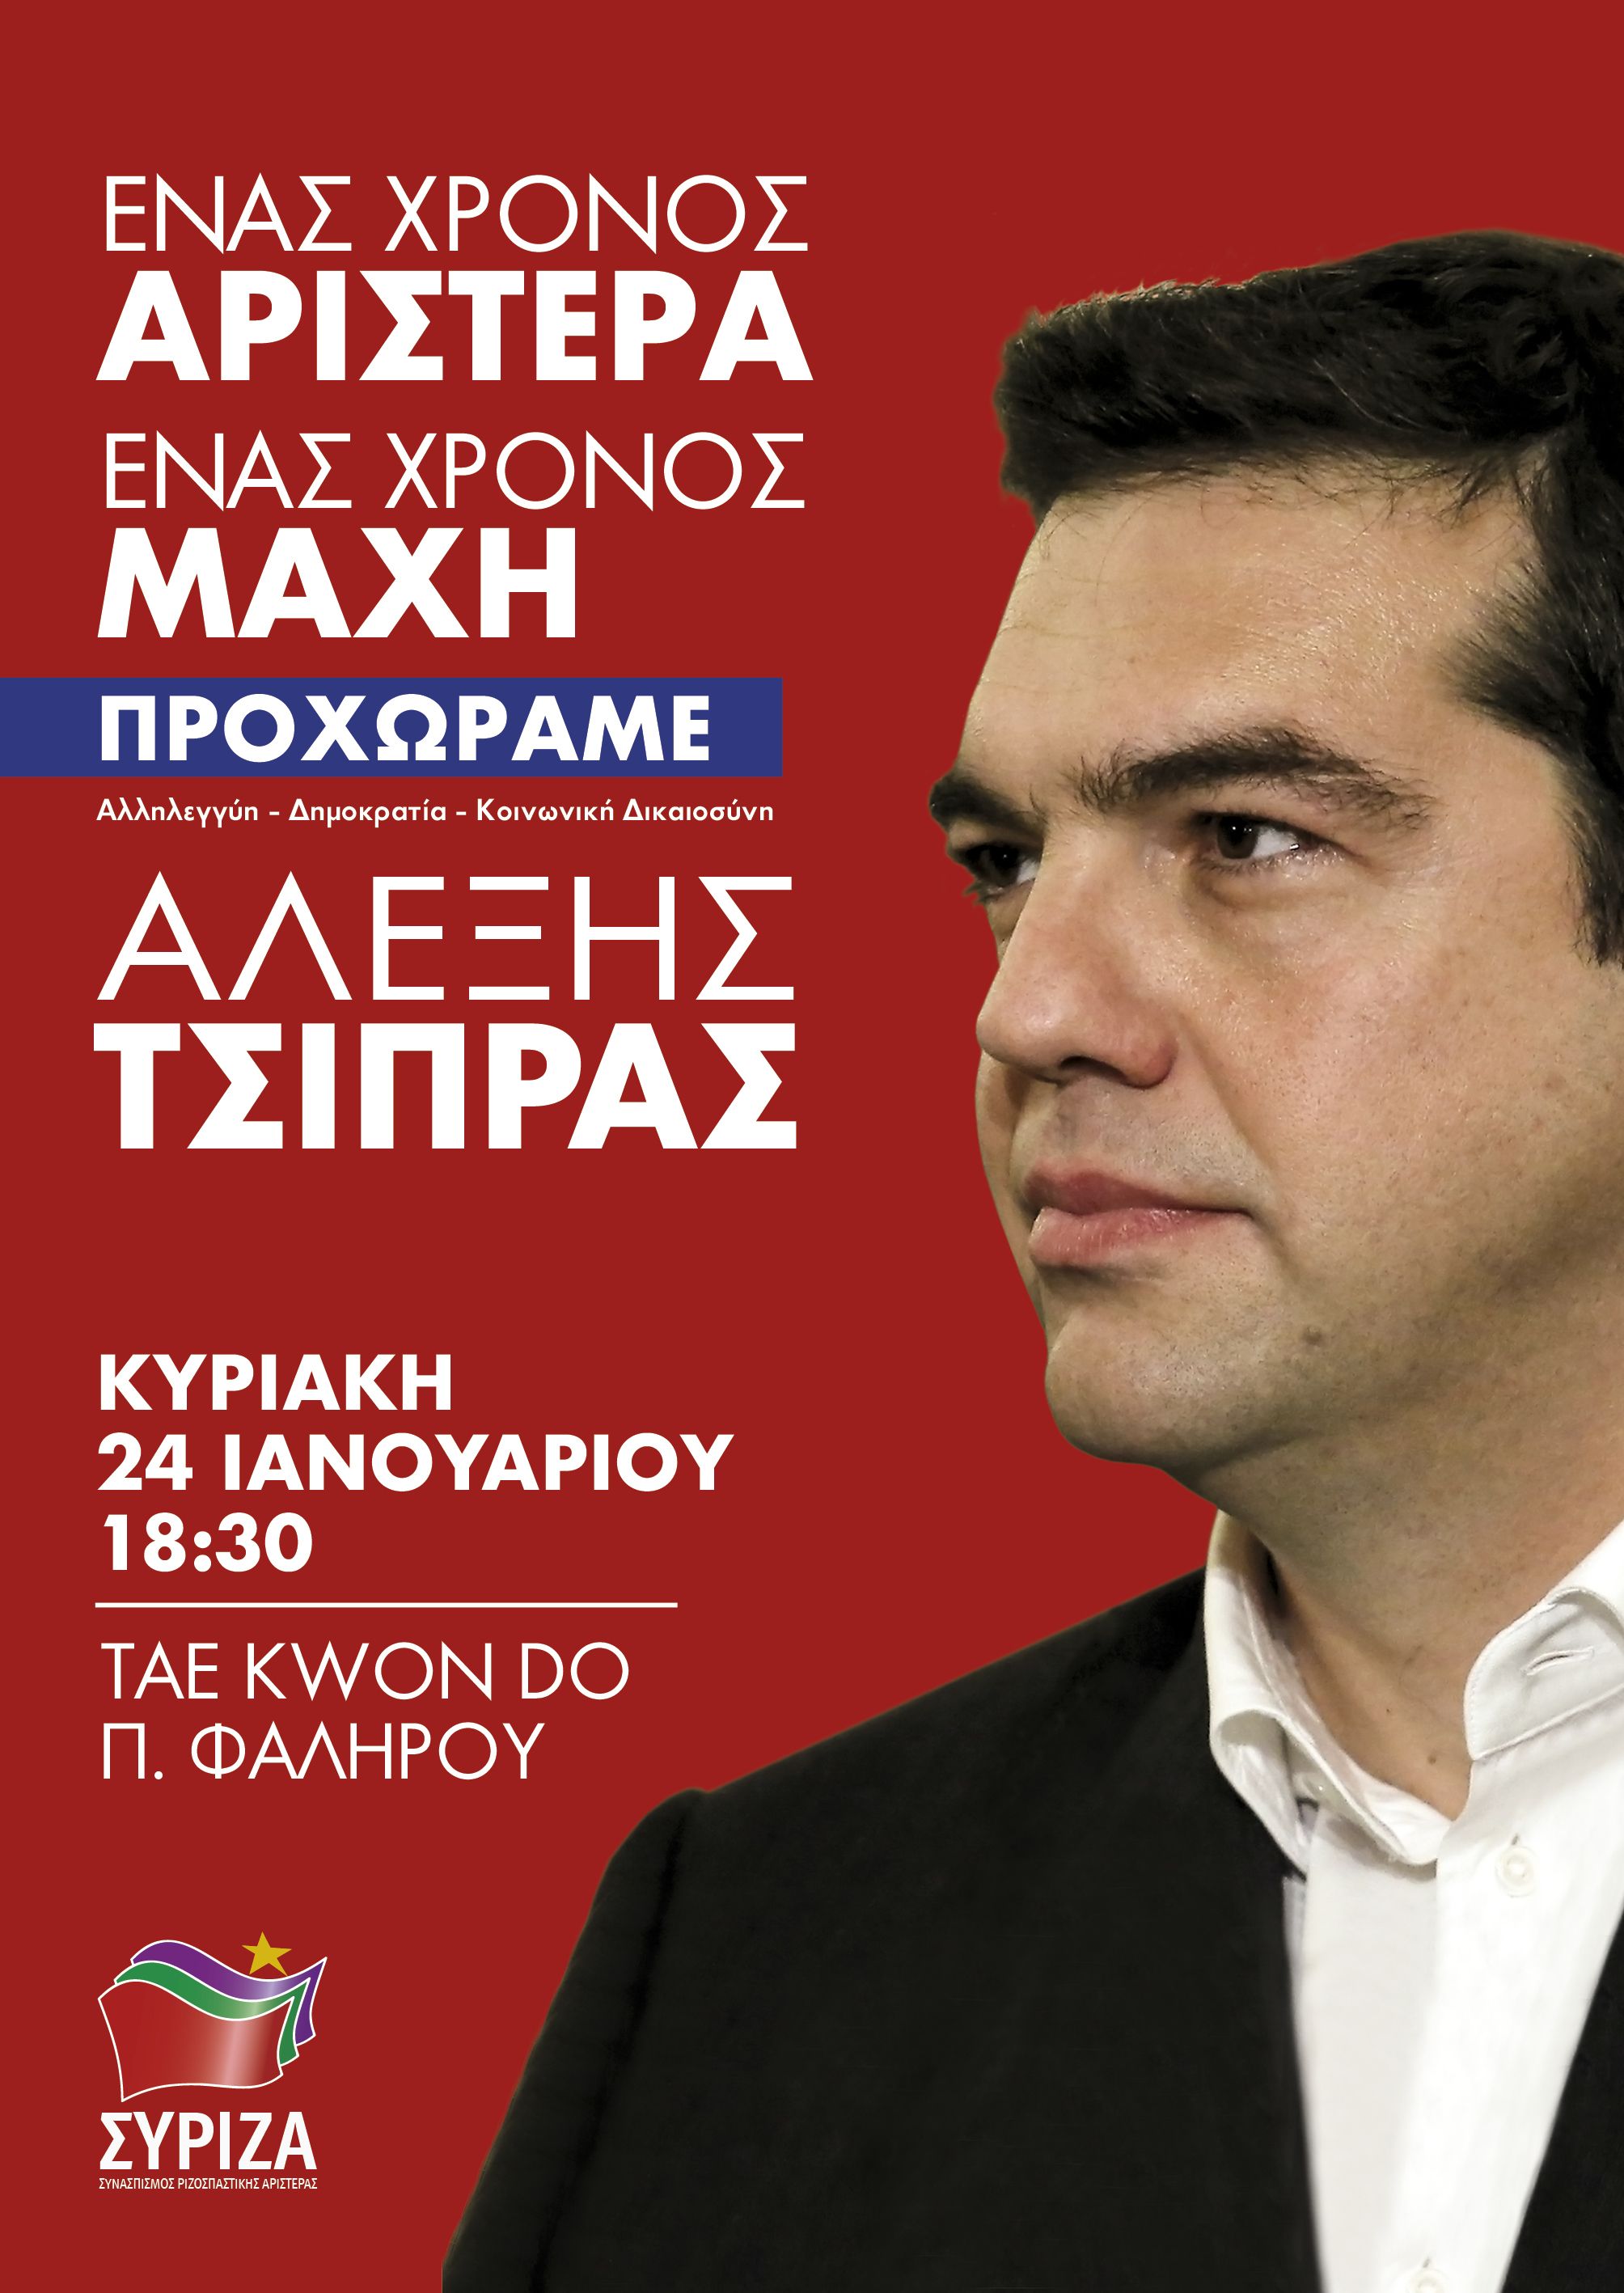 Ανοιχτή Πολιτική Εκδήλωση του ΣΥΡΙΖΑ: Ένας χρόνος Αριστερά - Ένας χρόνος Μάχη - Προχωράμε 